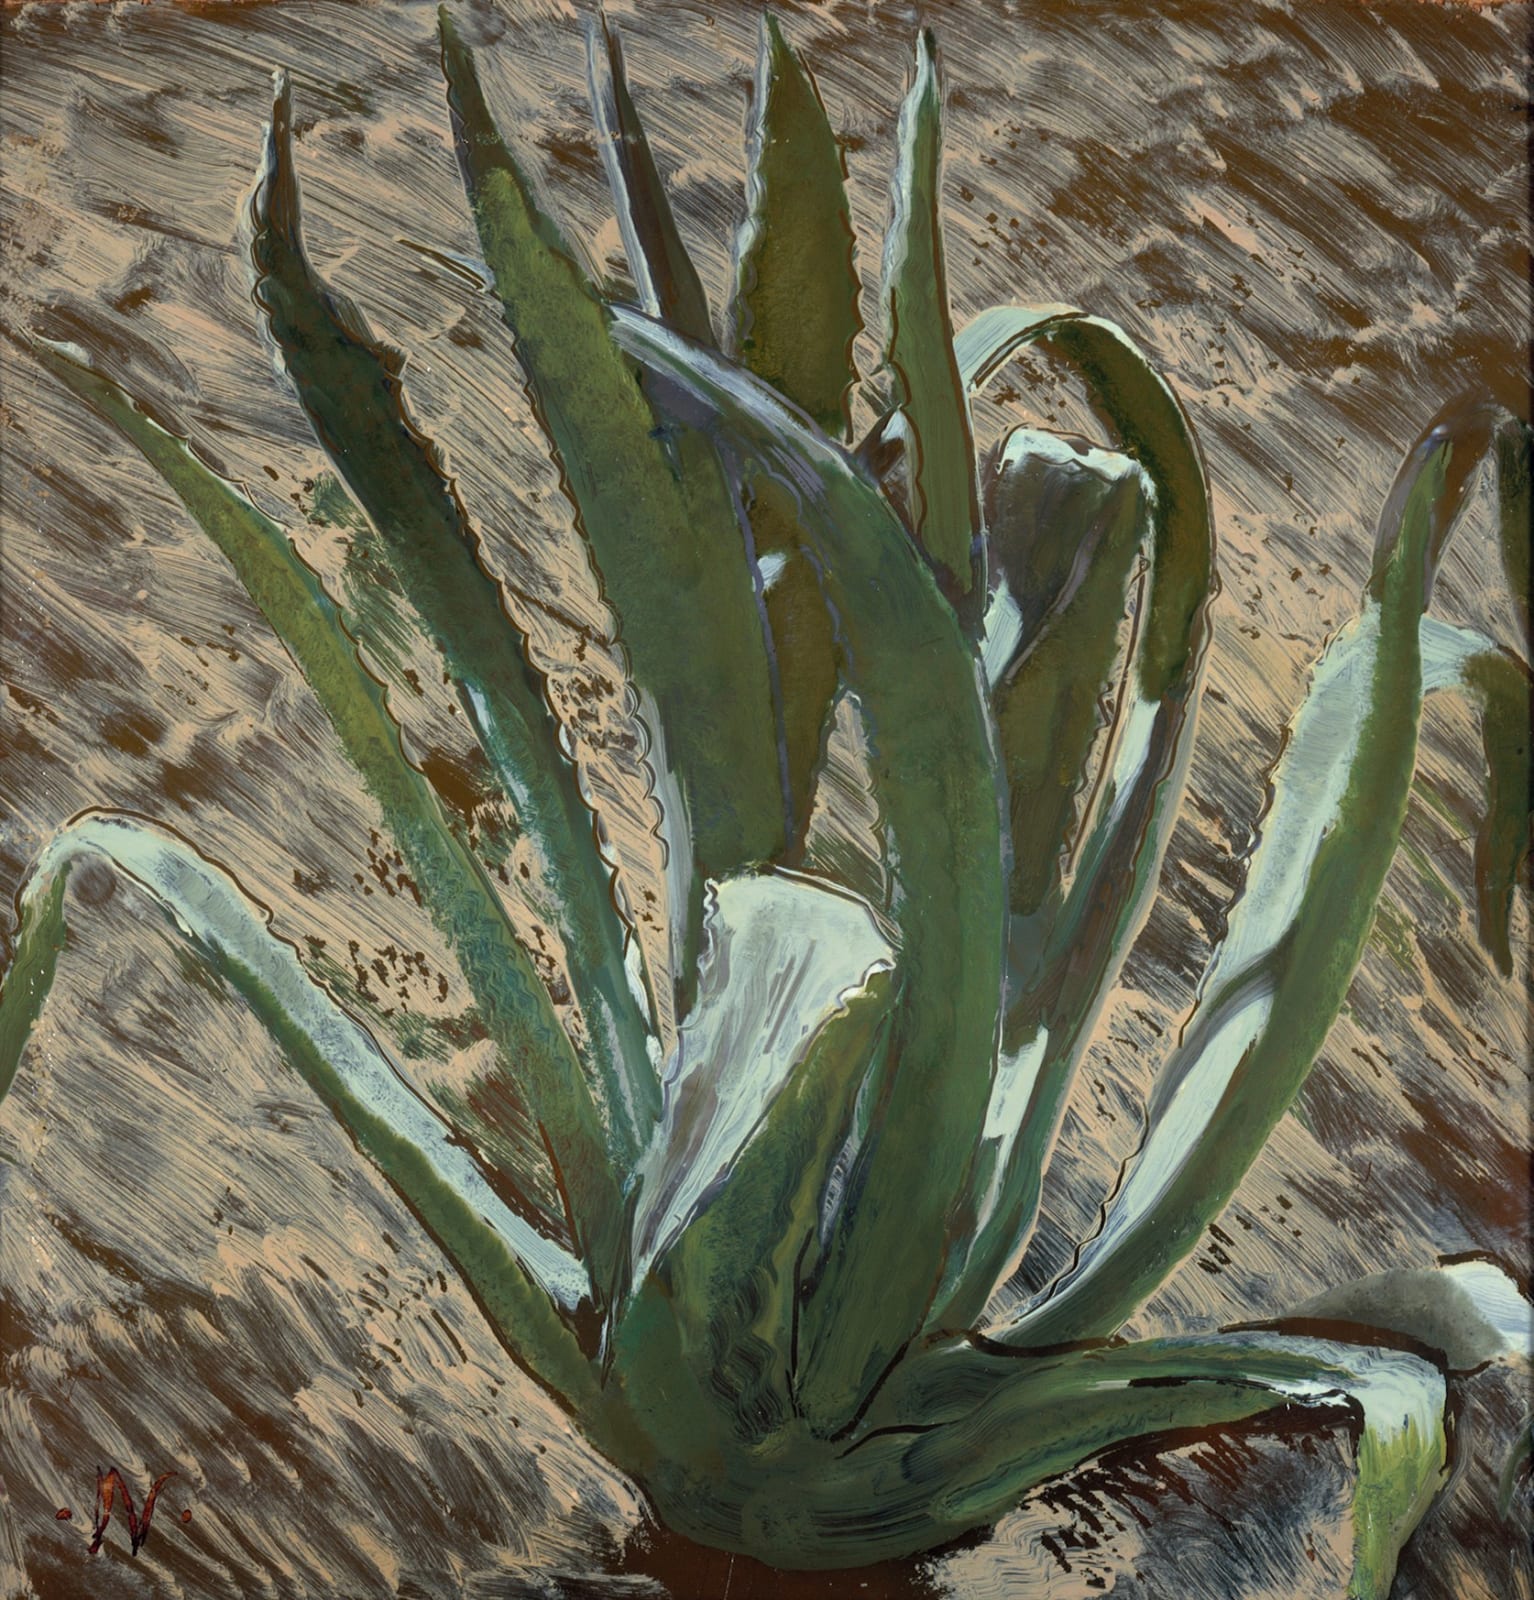 WILLIAM NICHOLSON, Cactus, 1935